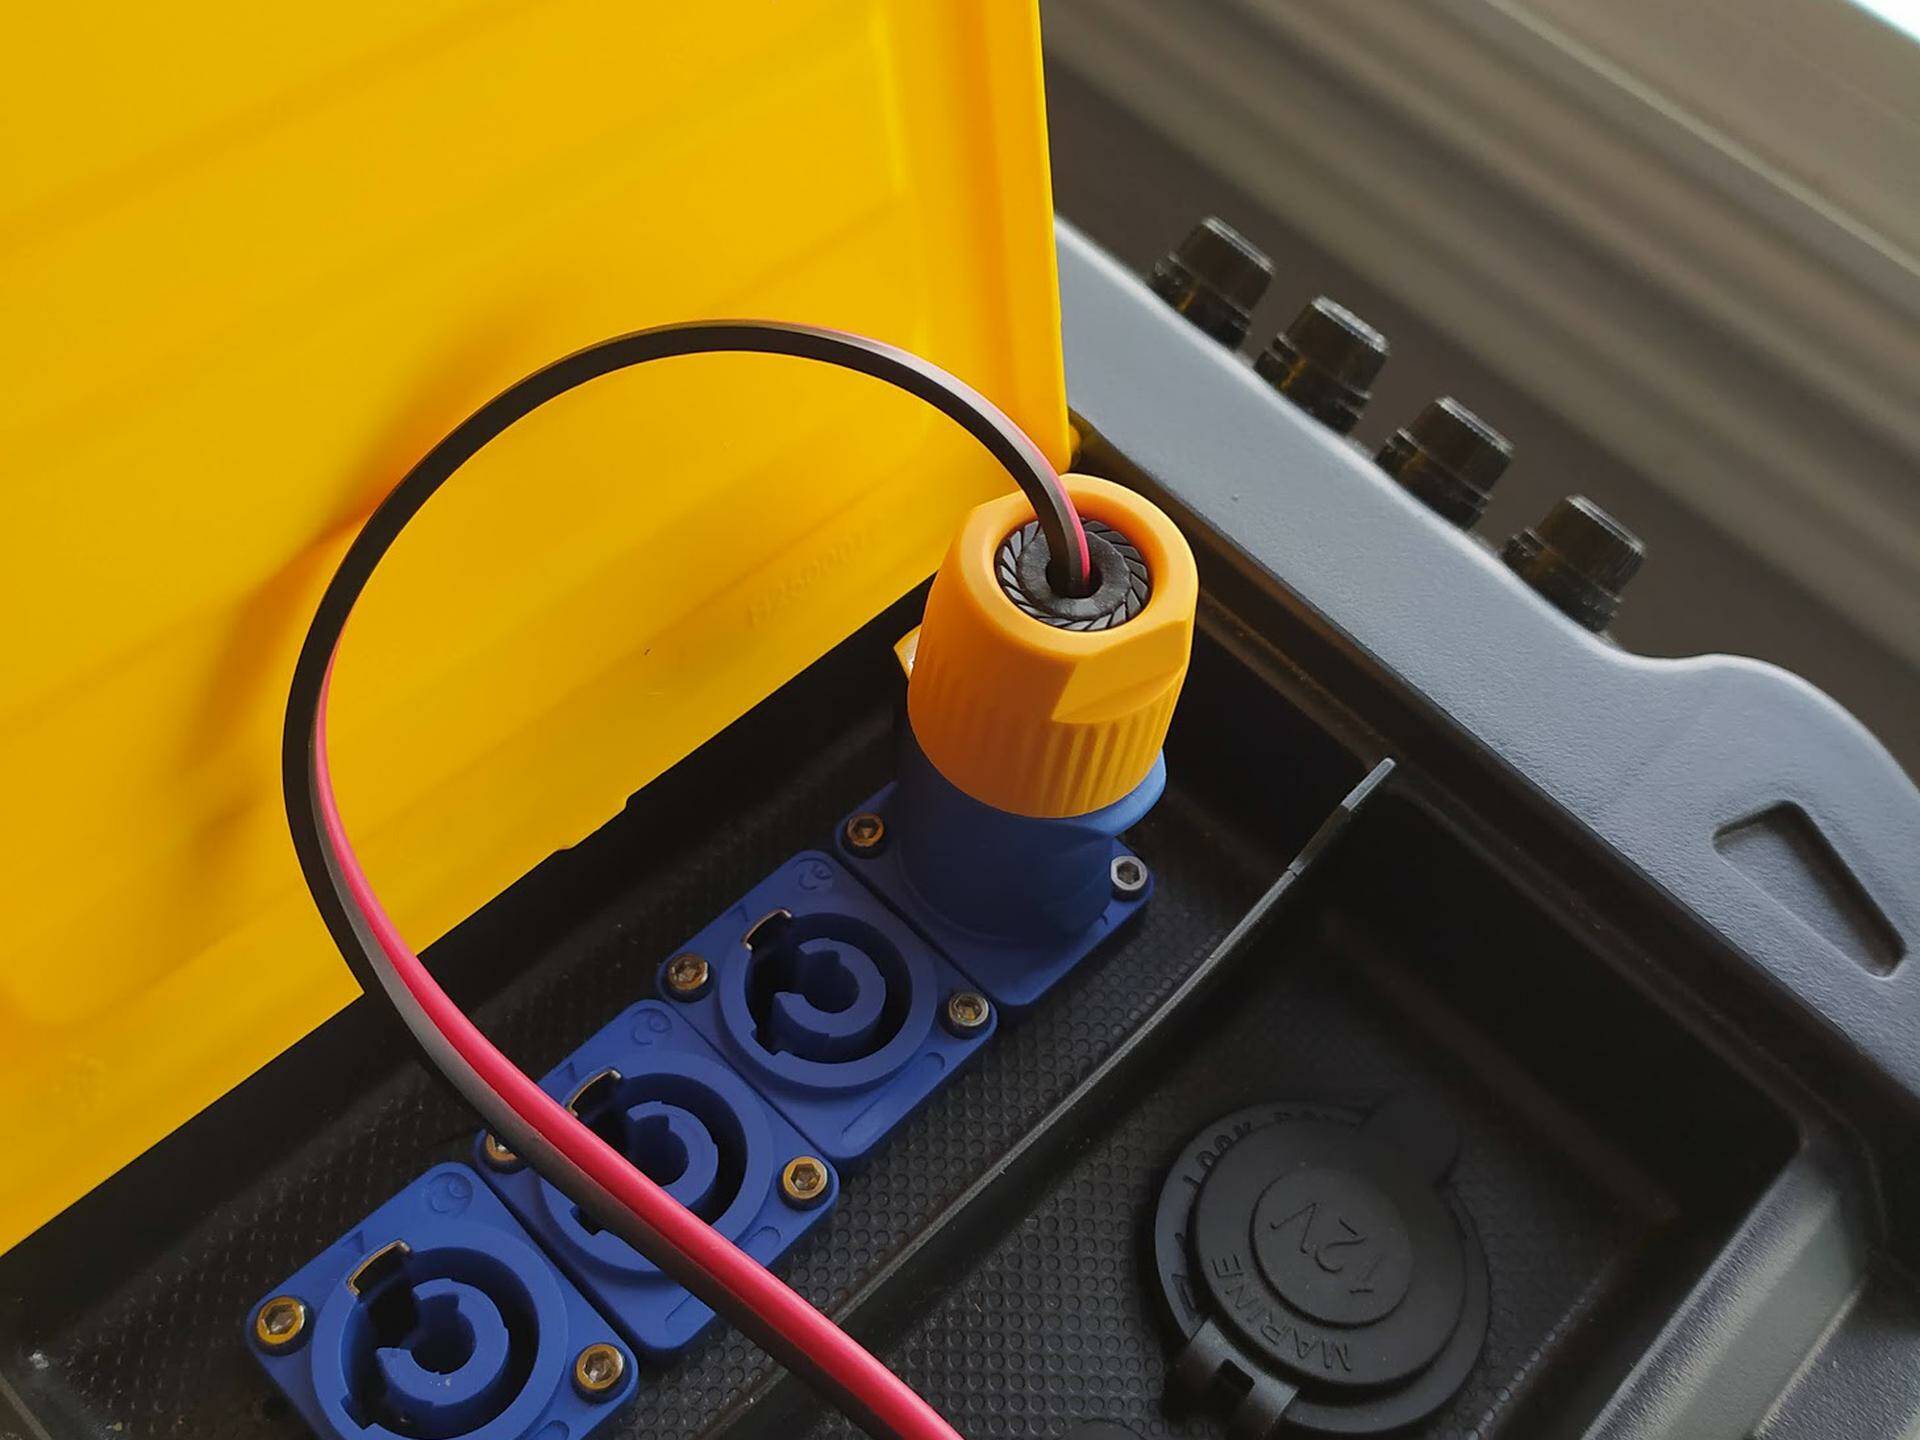 Detalle de cable conectado a la caja de batería